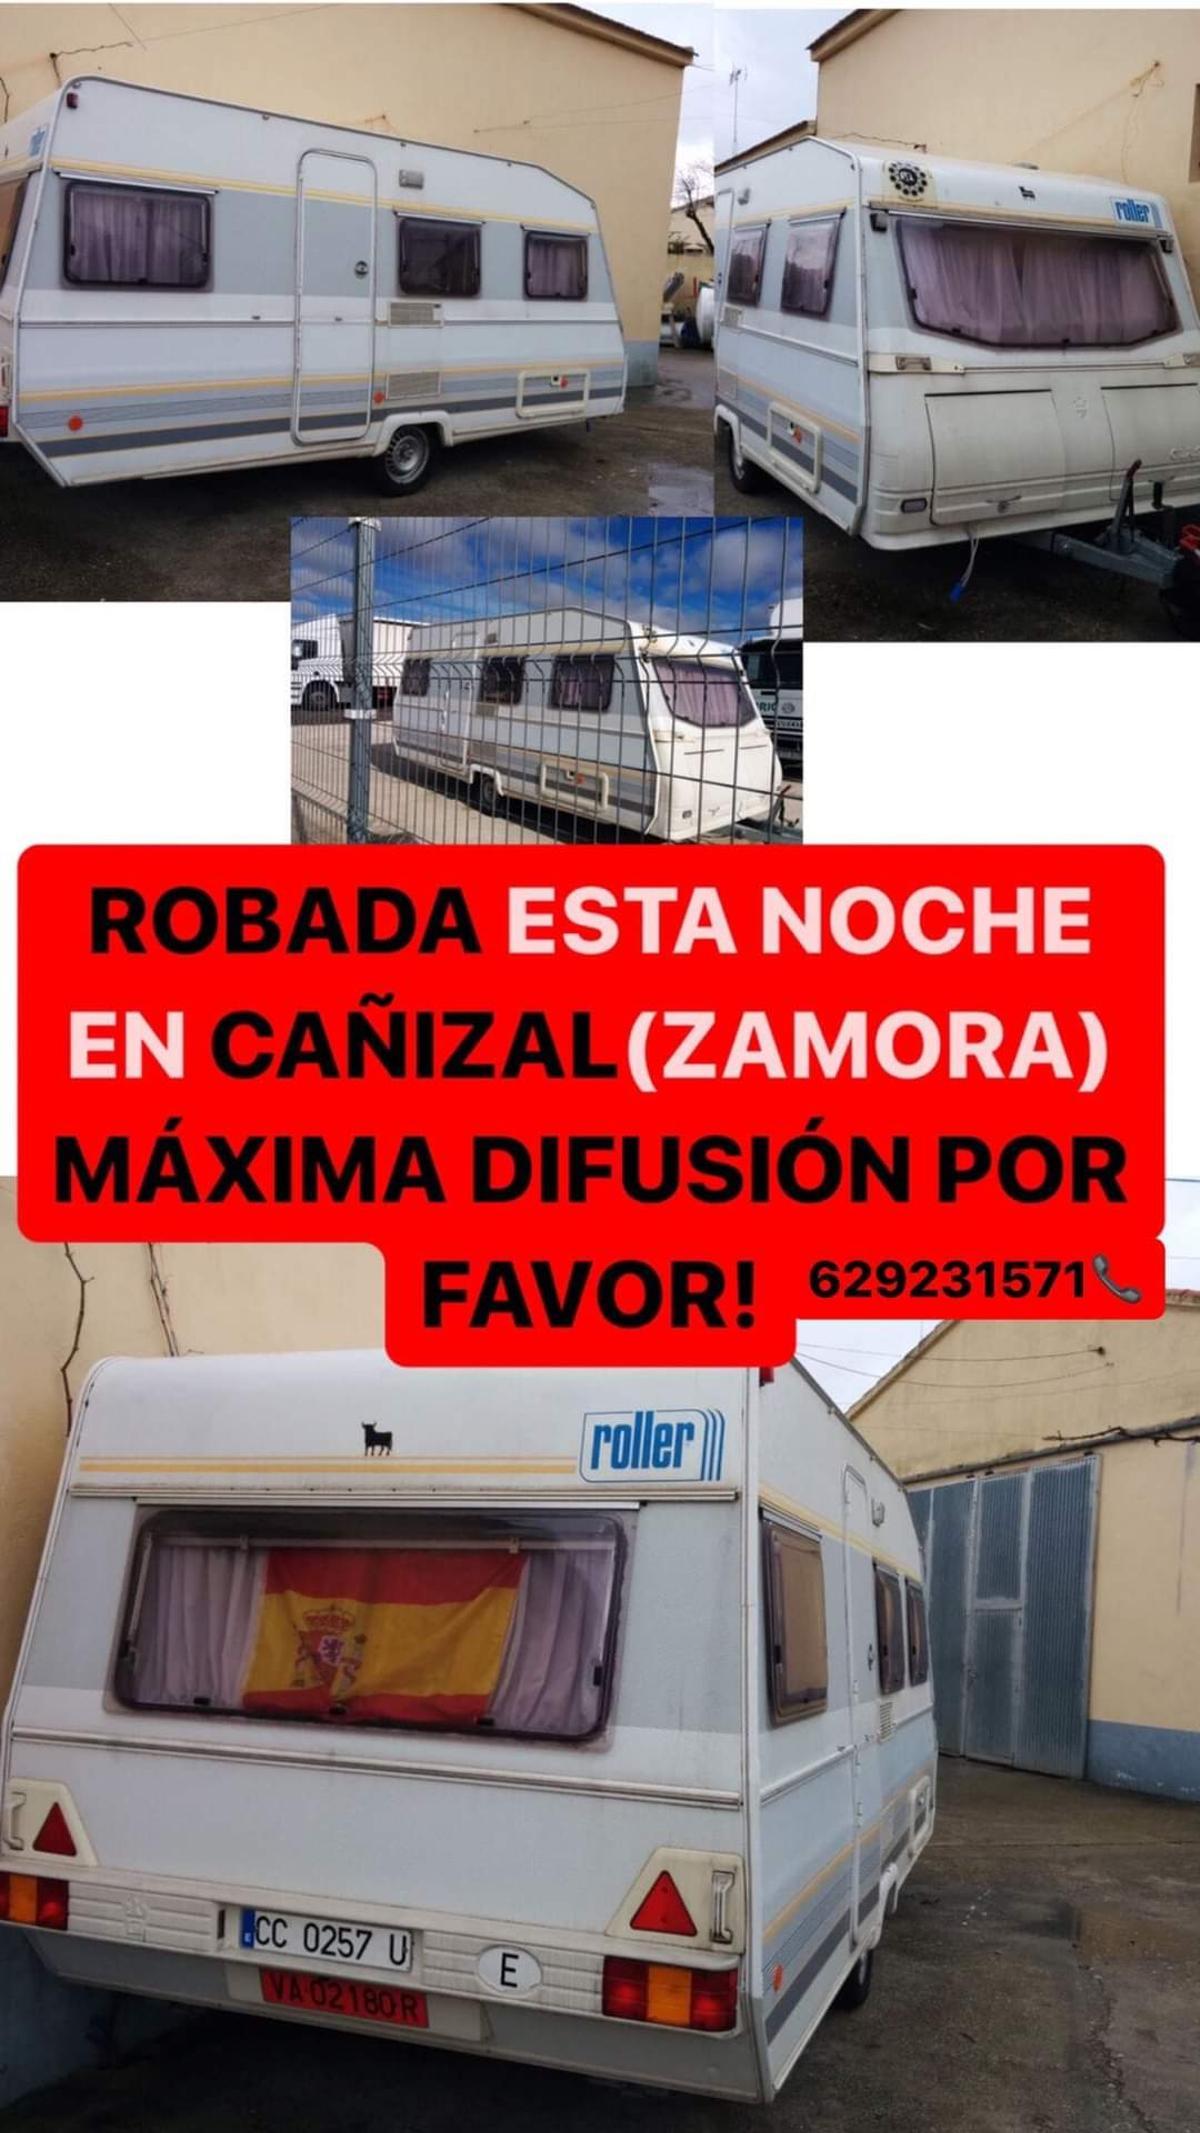 Caravana robada en Cañizal.